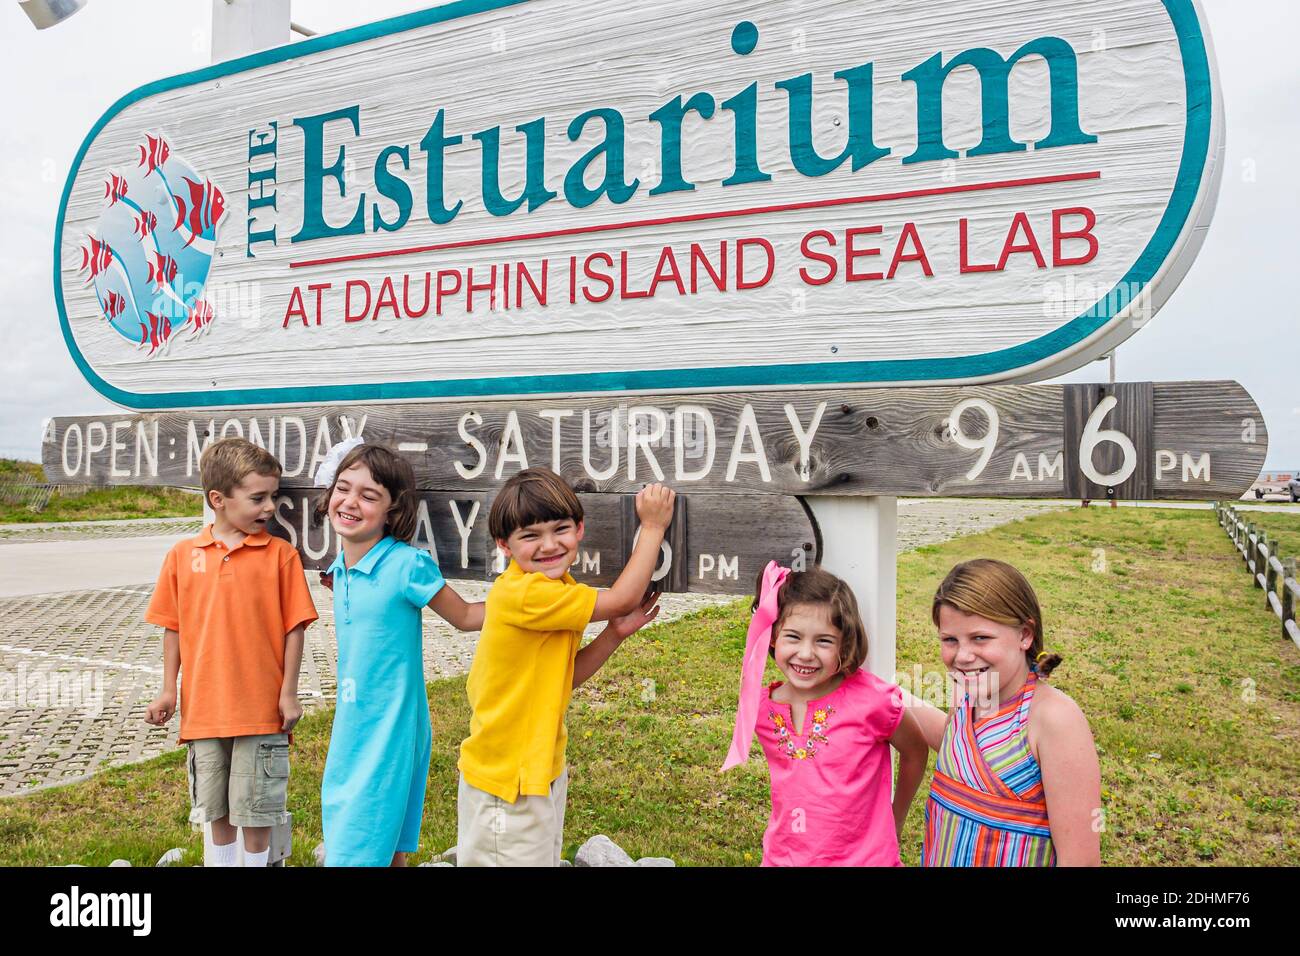 Alabama Dauphin Island Sea Lab Estuarium acquario pubblico, fuori bambini ragazzi ragazze cartello di ingresso, Foto Stock